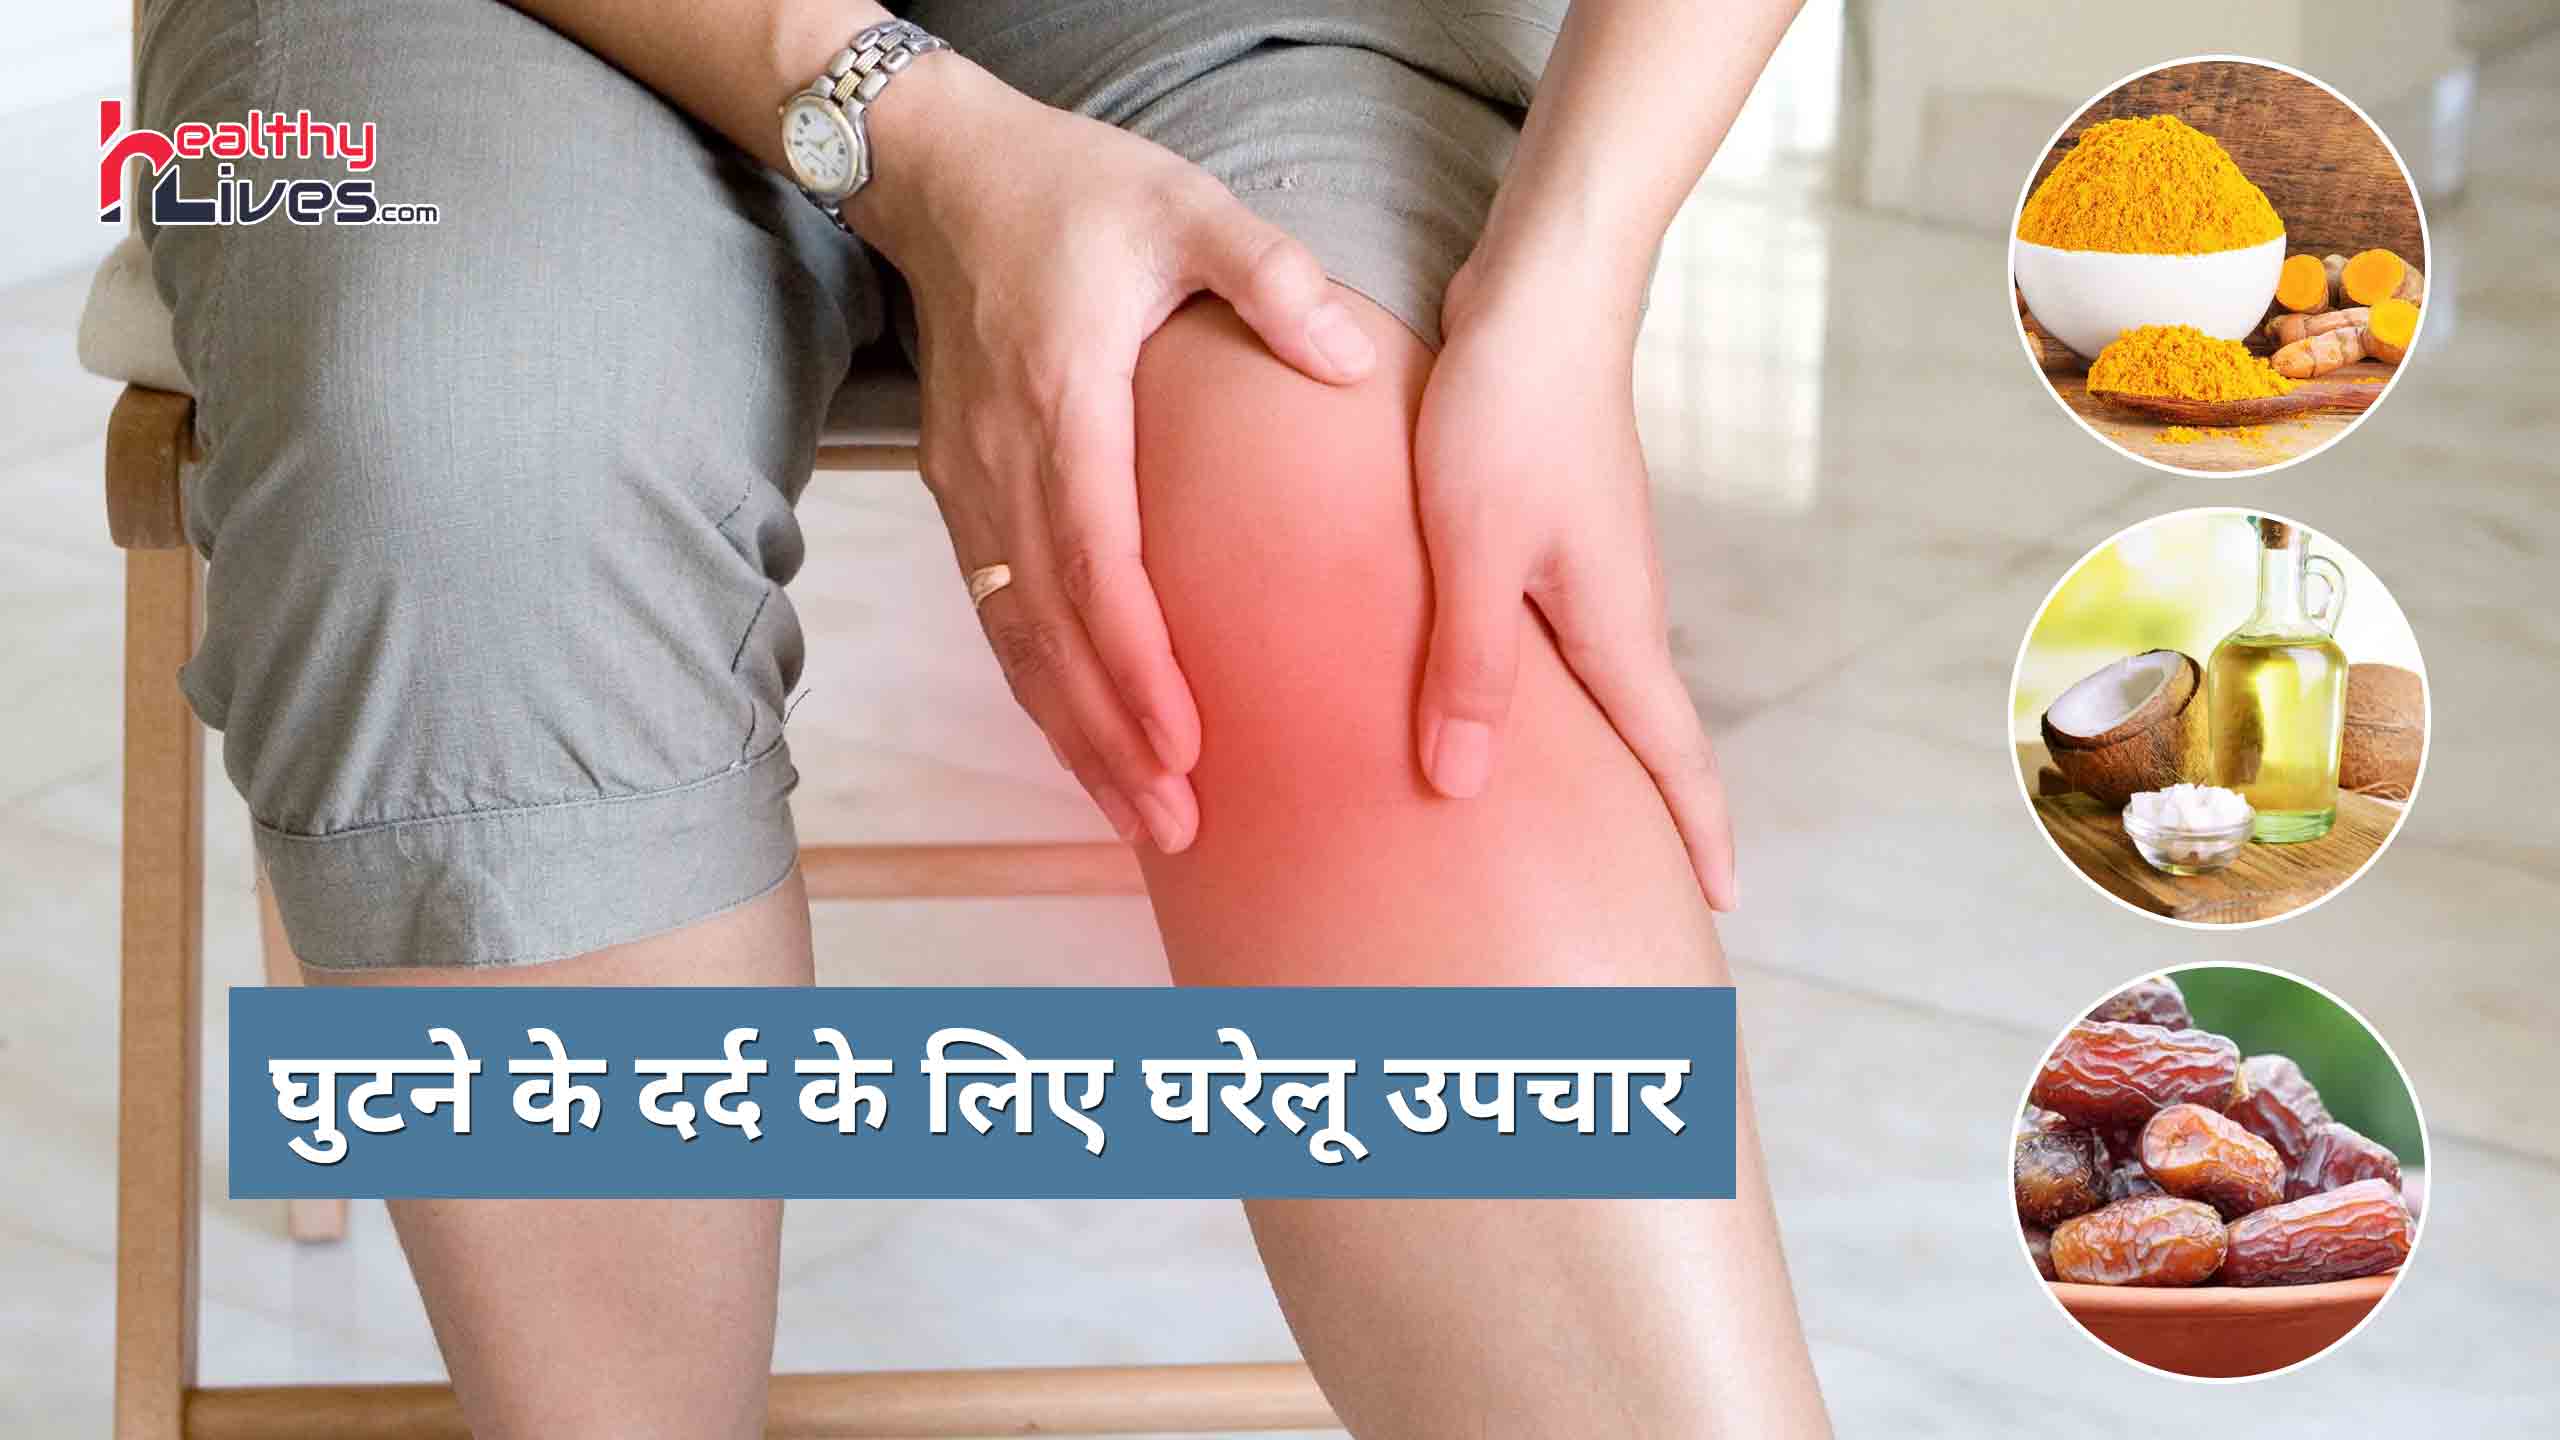 Home Remedies For Knee Pain: जानें घुटनो के दर्द से राहत पाने के लिए घरेलु उपचार